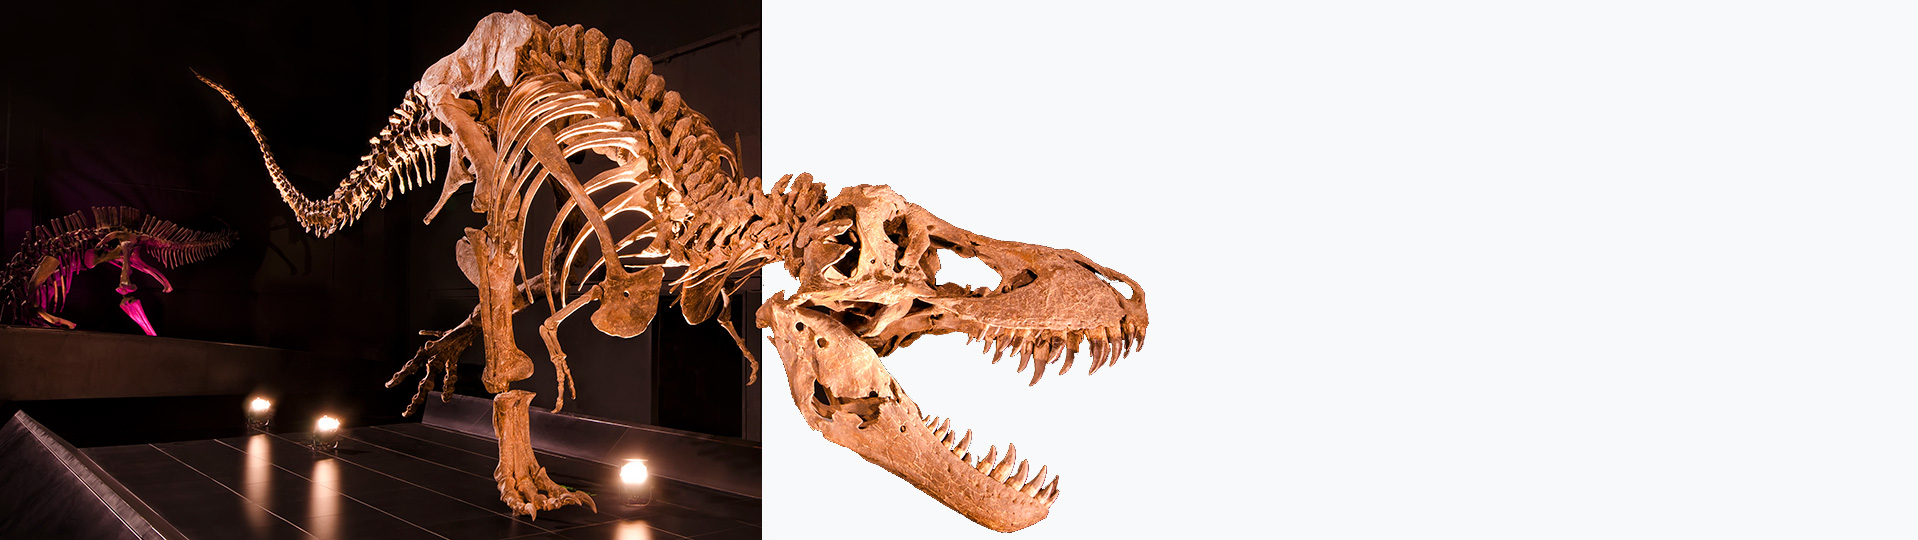 Tyrannosaurus Rex, Палеонтологический музей в Теруэле